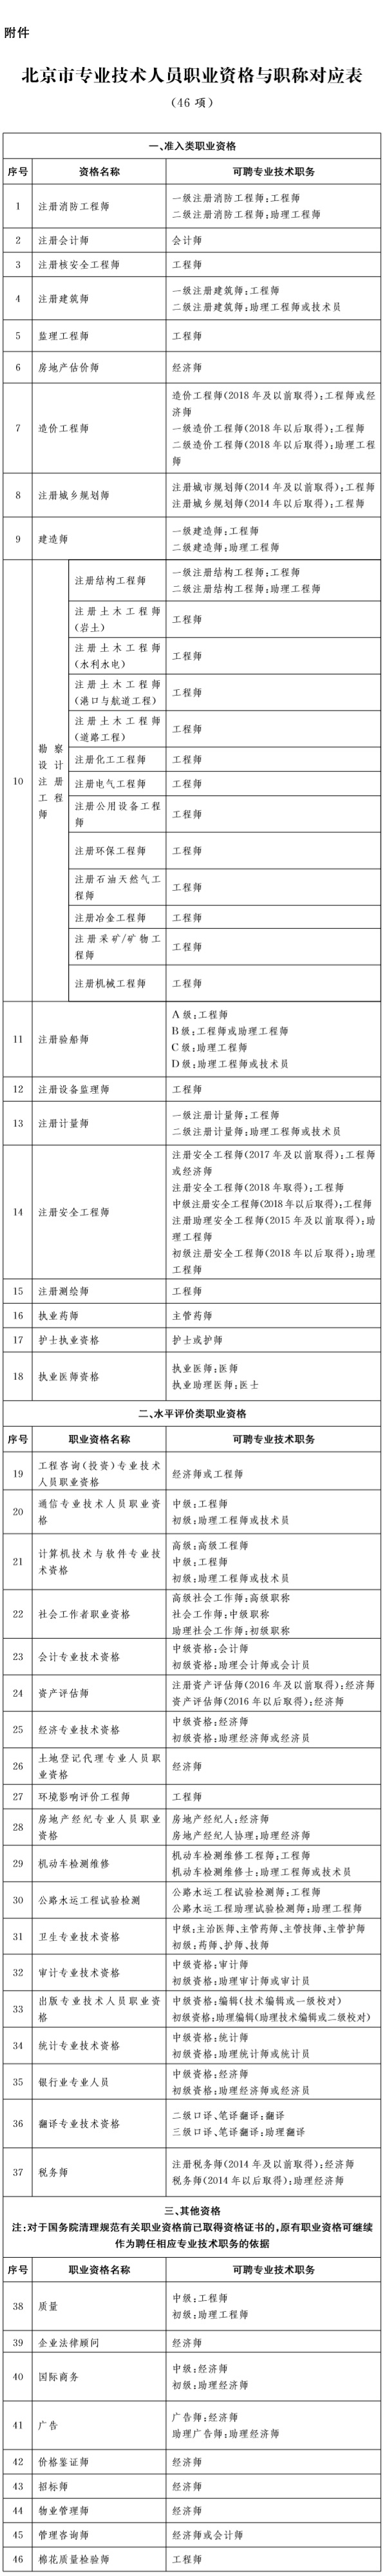 29-附件：北京市专业技术人员职业资格与职称对应表(46项).jpg